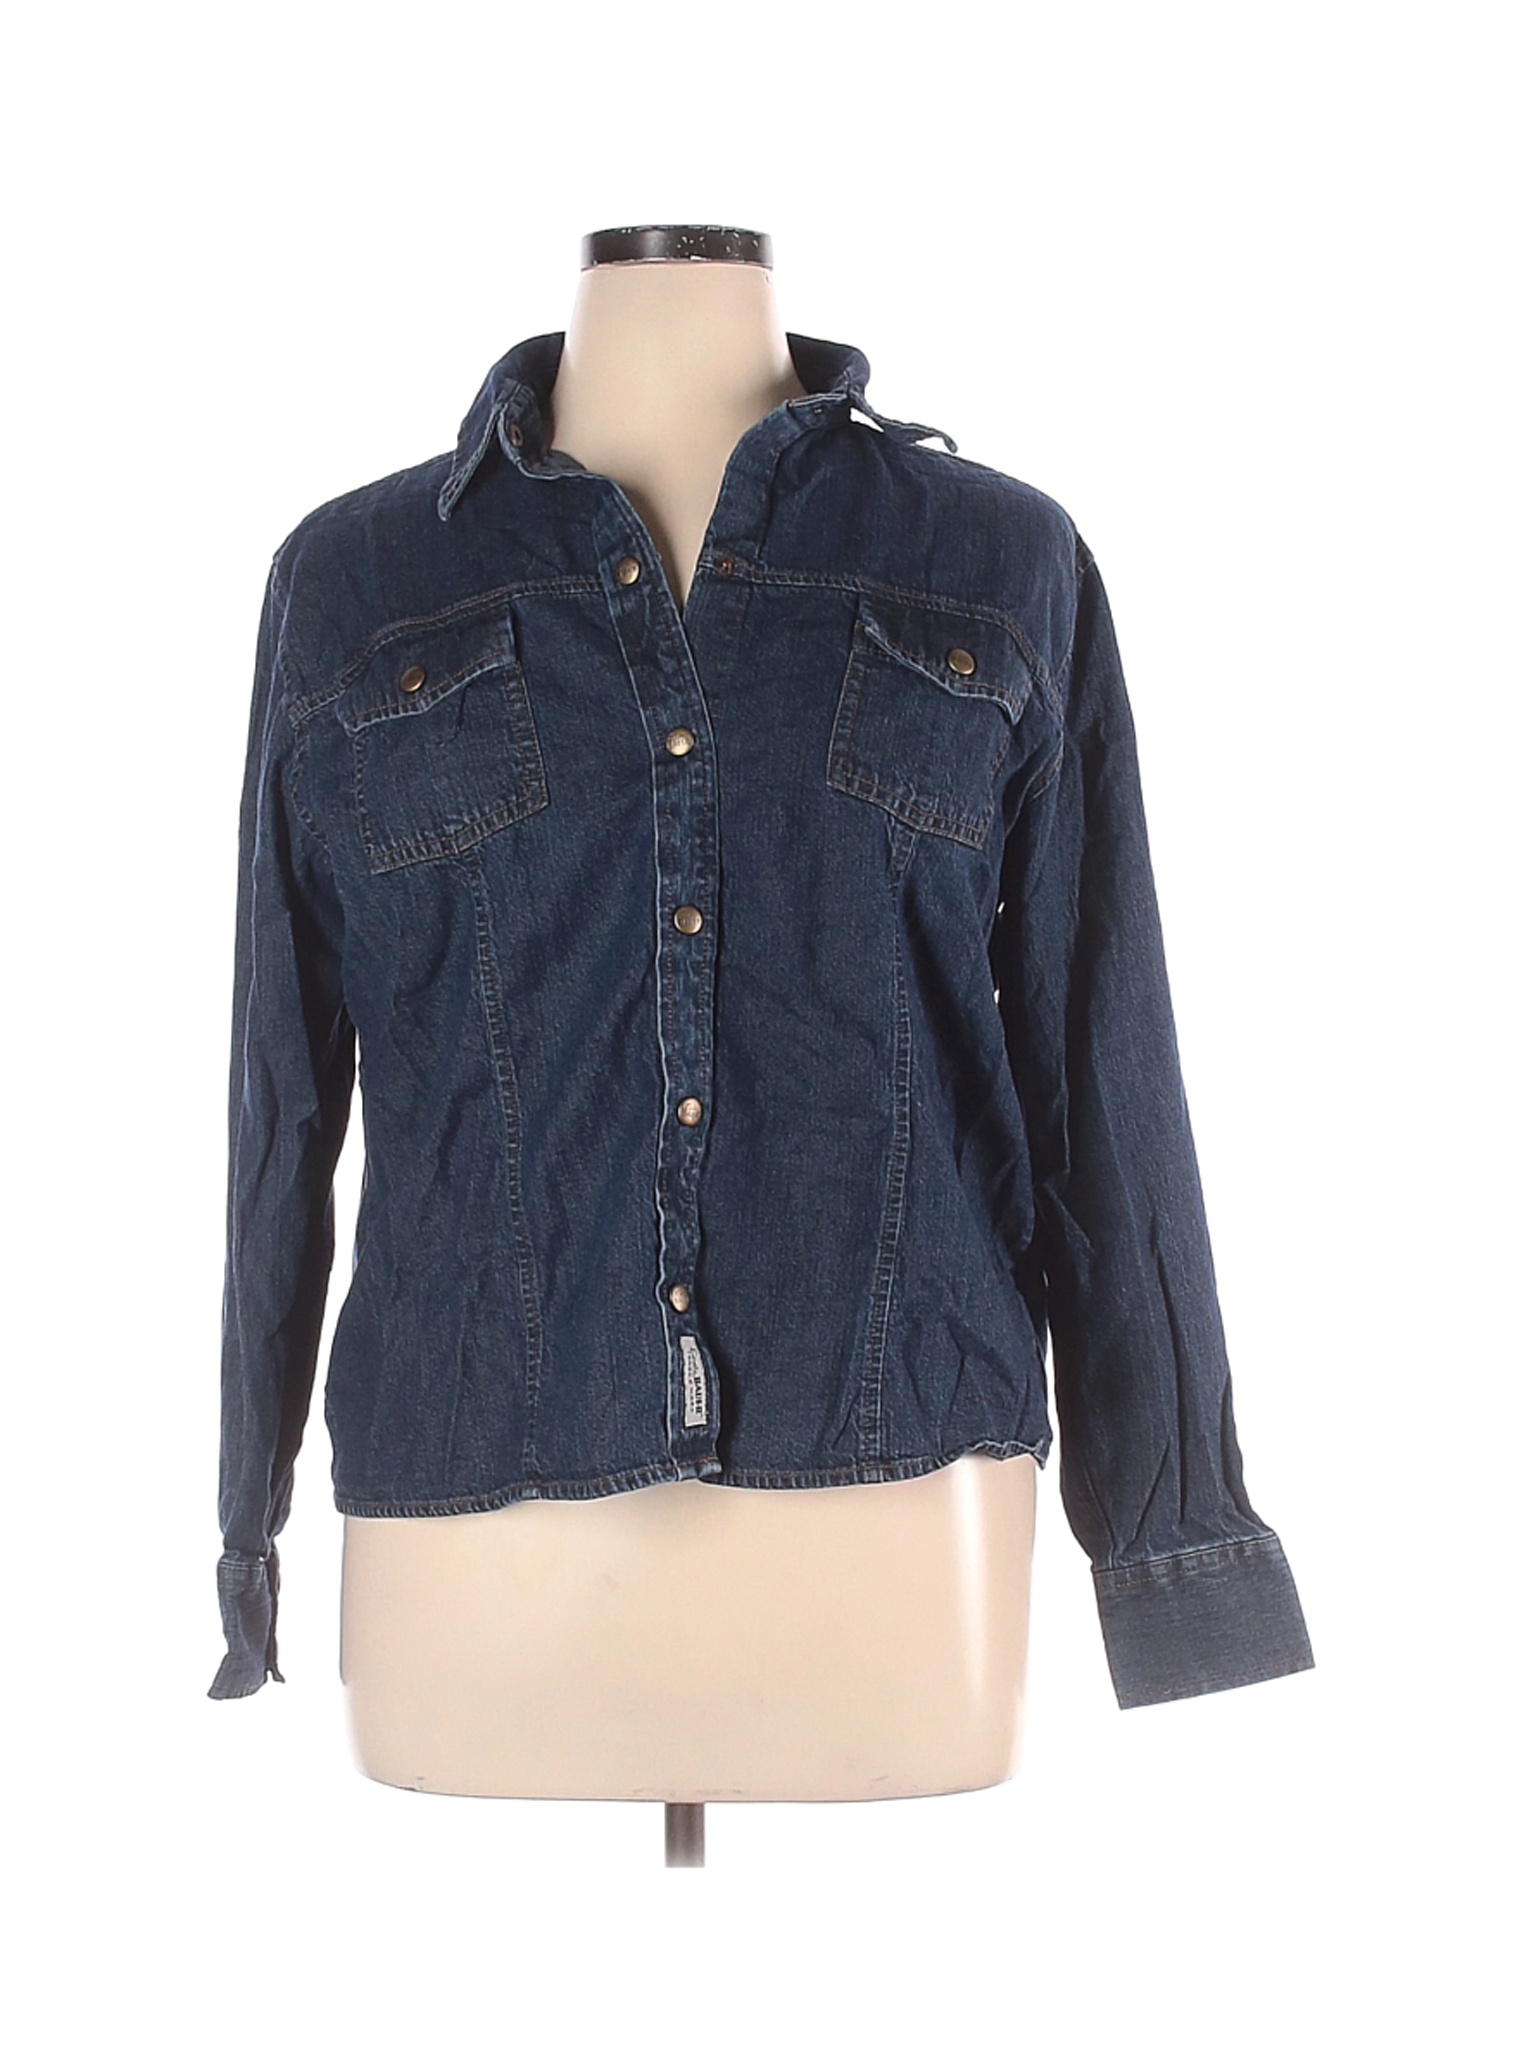 Eddie Bauer Women Blue Denim Jacket XL | eBay